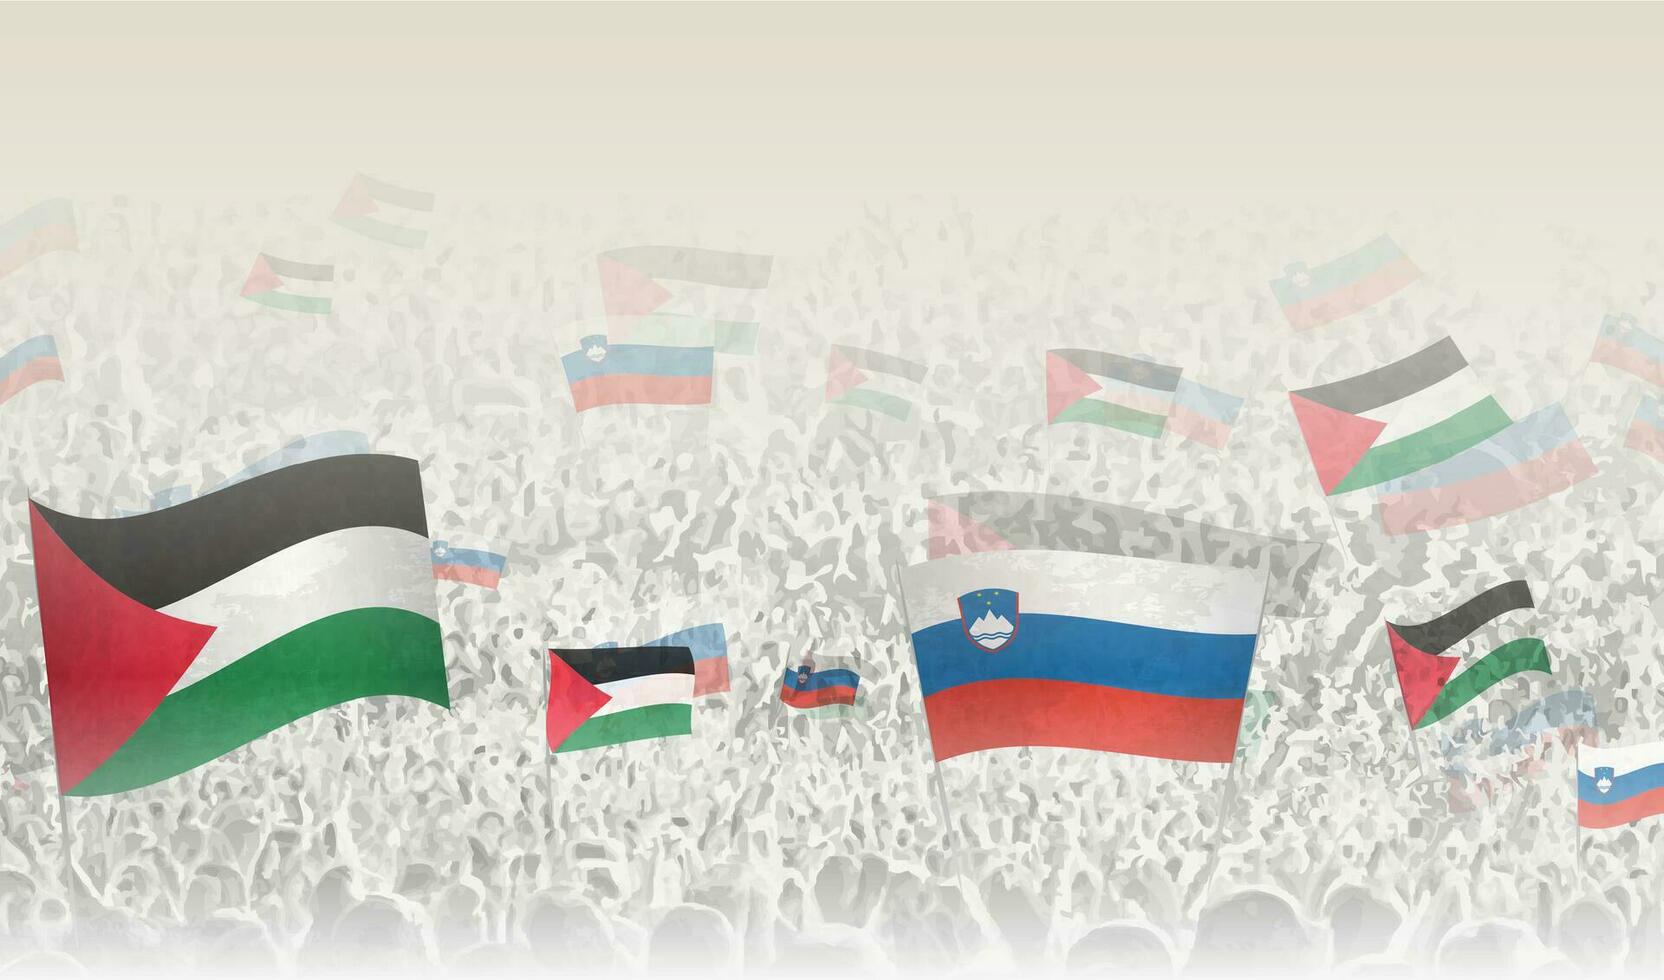 palestina och slovenien flaggor i en folkmassan av glädjande människor. vektor